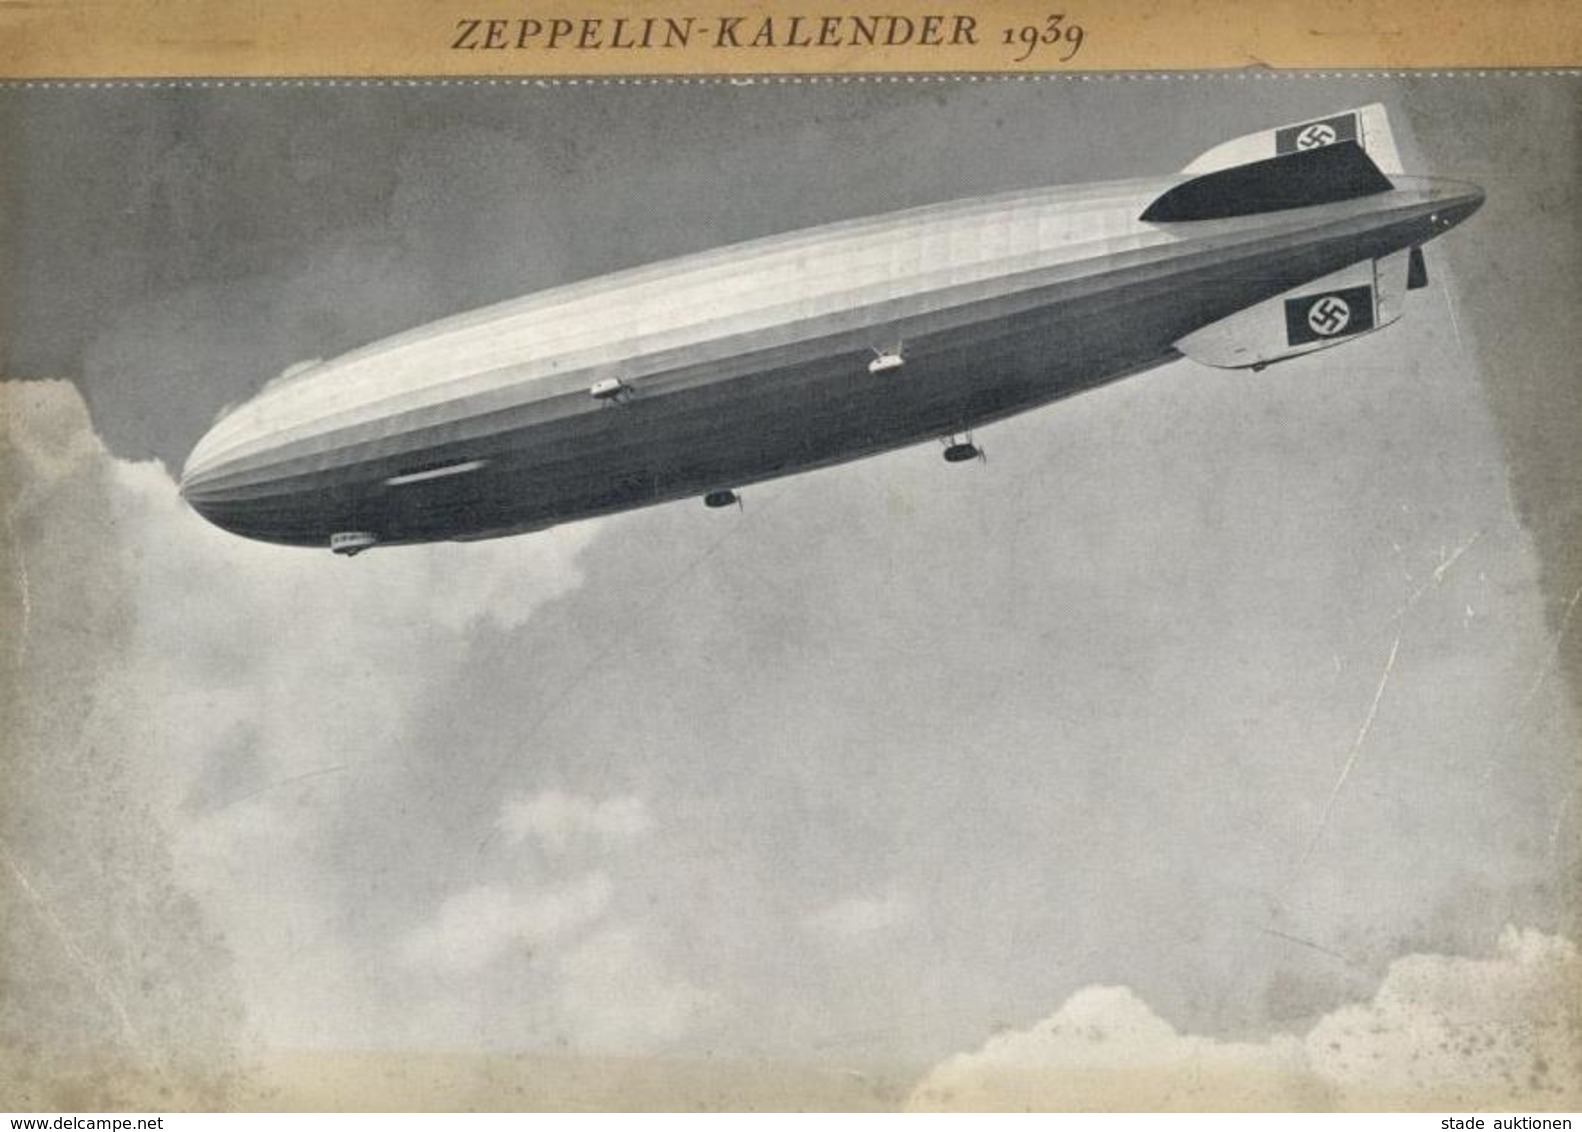 Buch Zeppelin Kalender 1939 Hrsg. Luftschiffbau Zeppelin Verlag W. Spemann 52 Seiten Mit Abbildungen II (fleckig) Dirige - Aeronaves